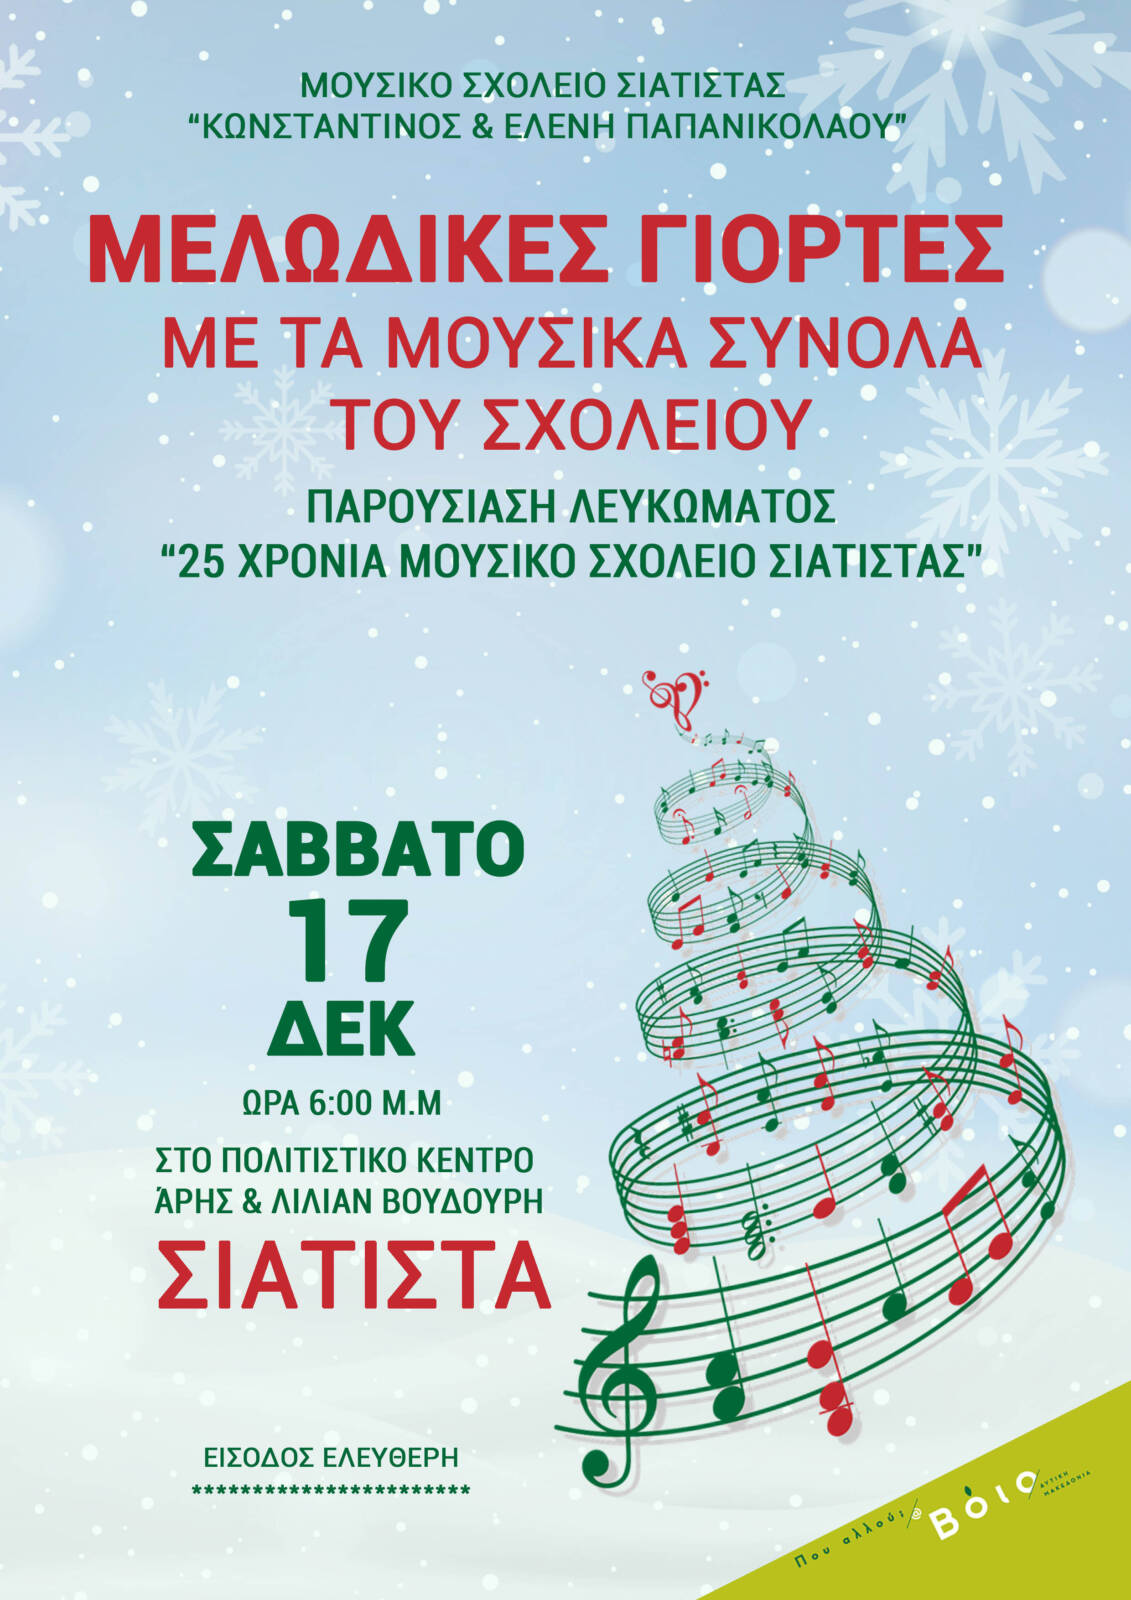 Πρόσκληση για τη Χριστουγεννιάτικη εκδήλωση και παρουσίαση του λευκώματος για τα 25 χρόνια του Μουσικού Σχολείου Σιάτιστας